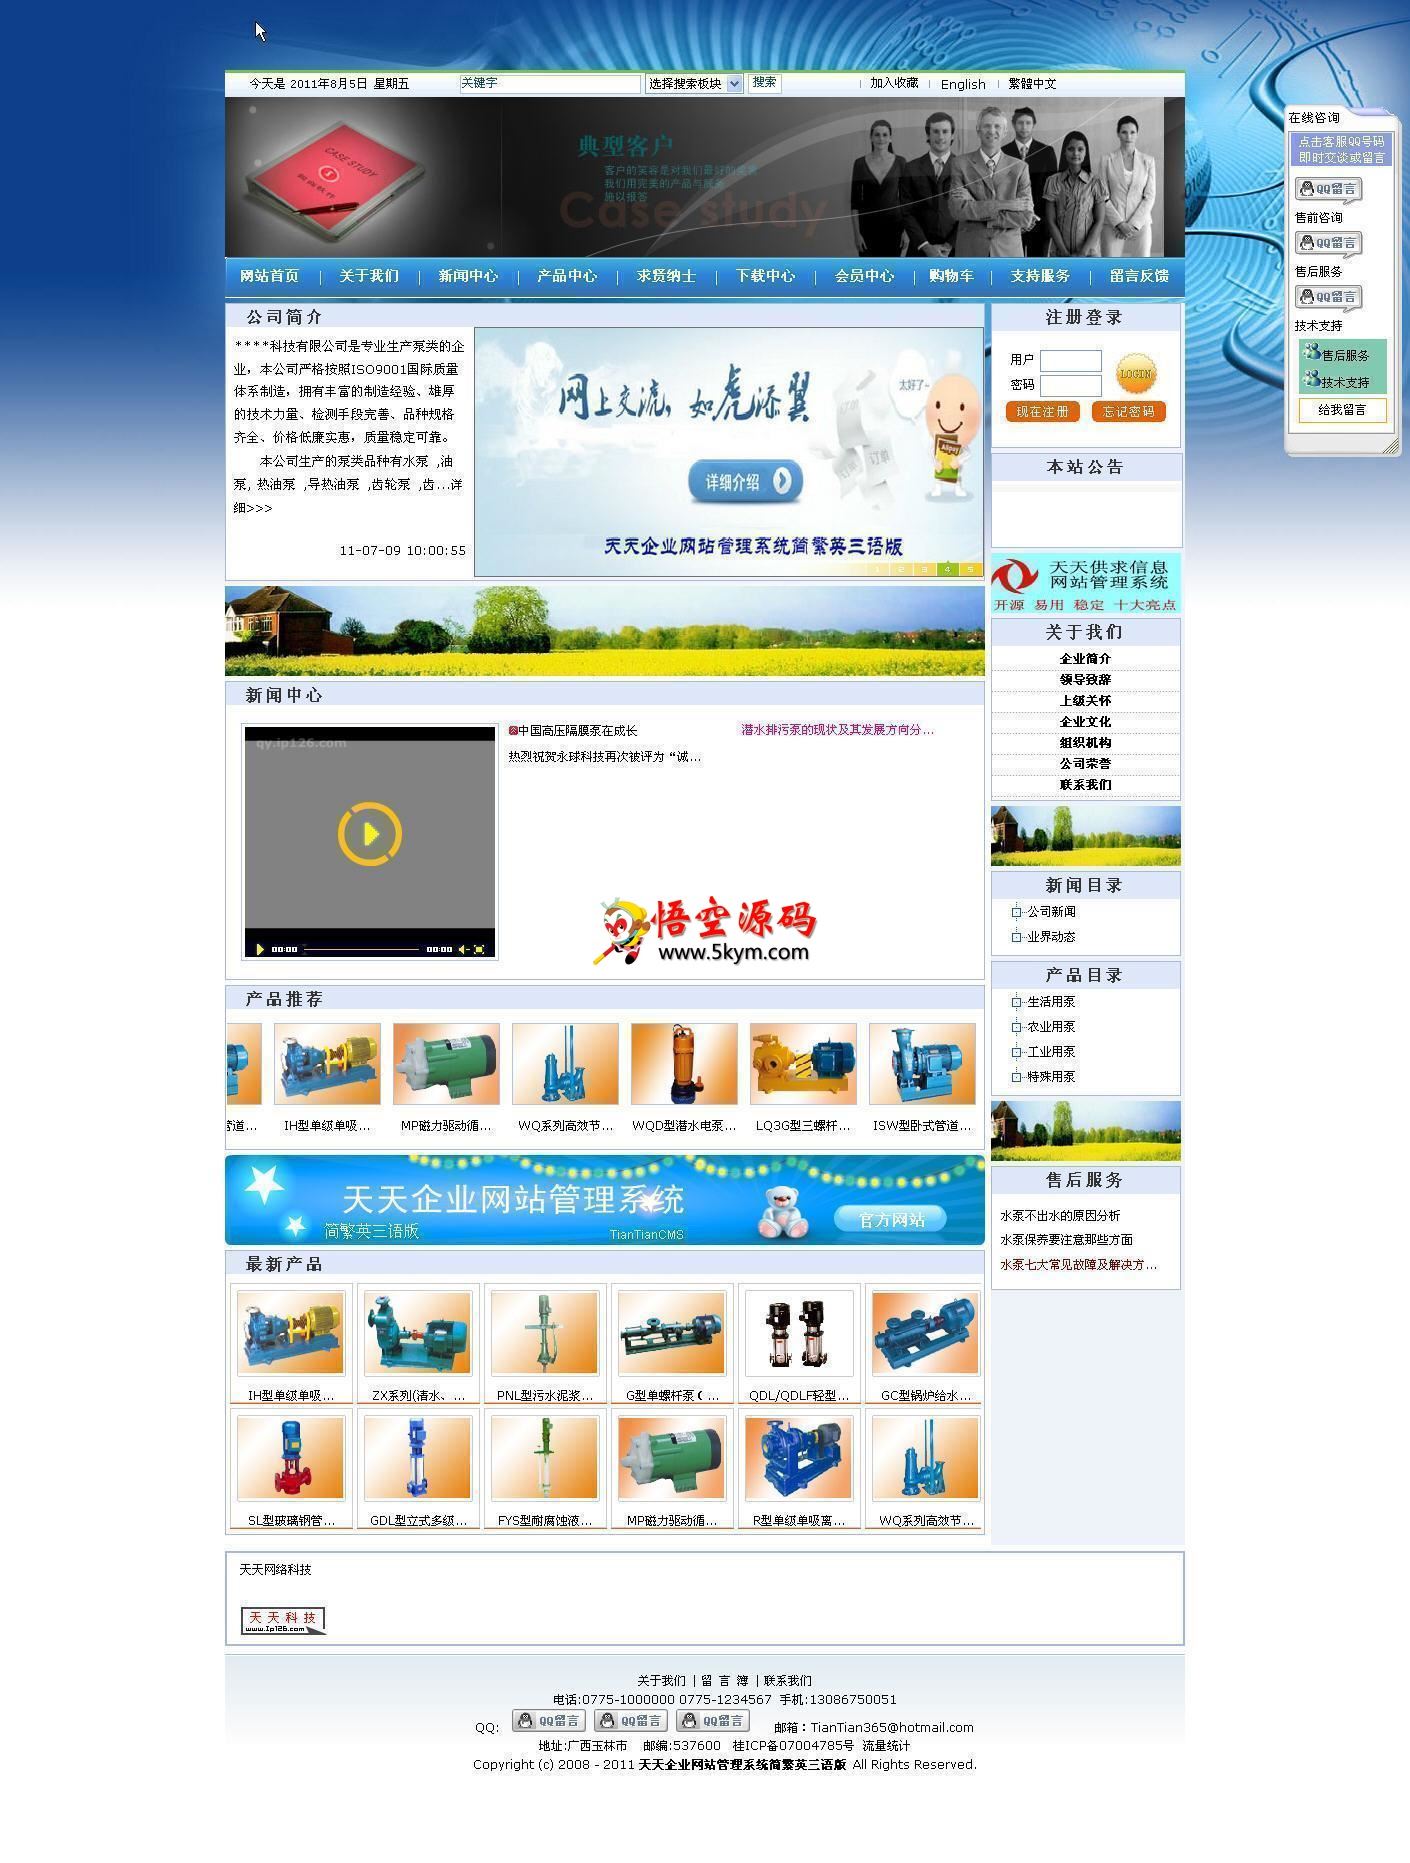 天天企业网站管理系统简繁英三语版